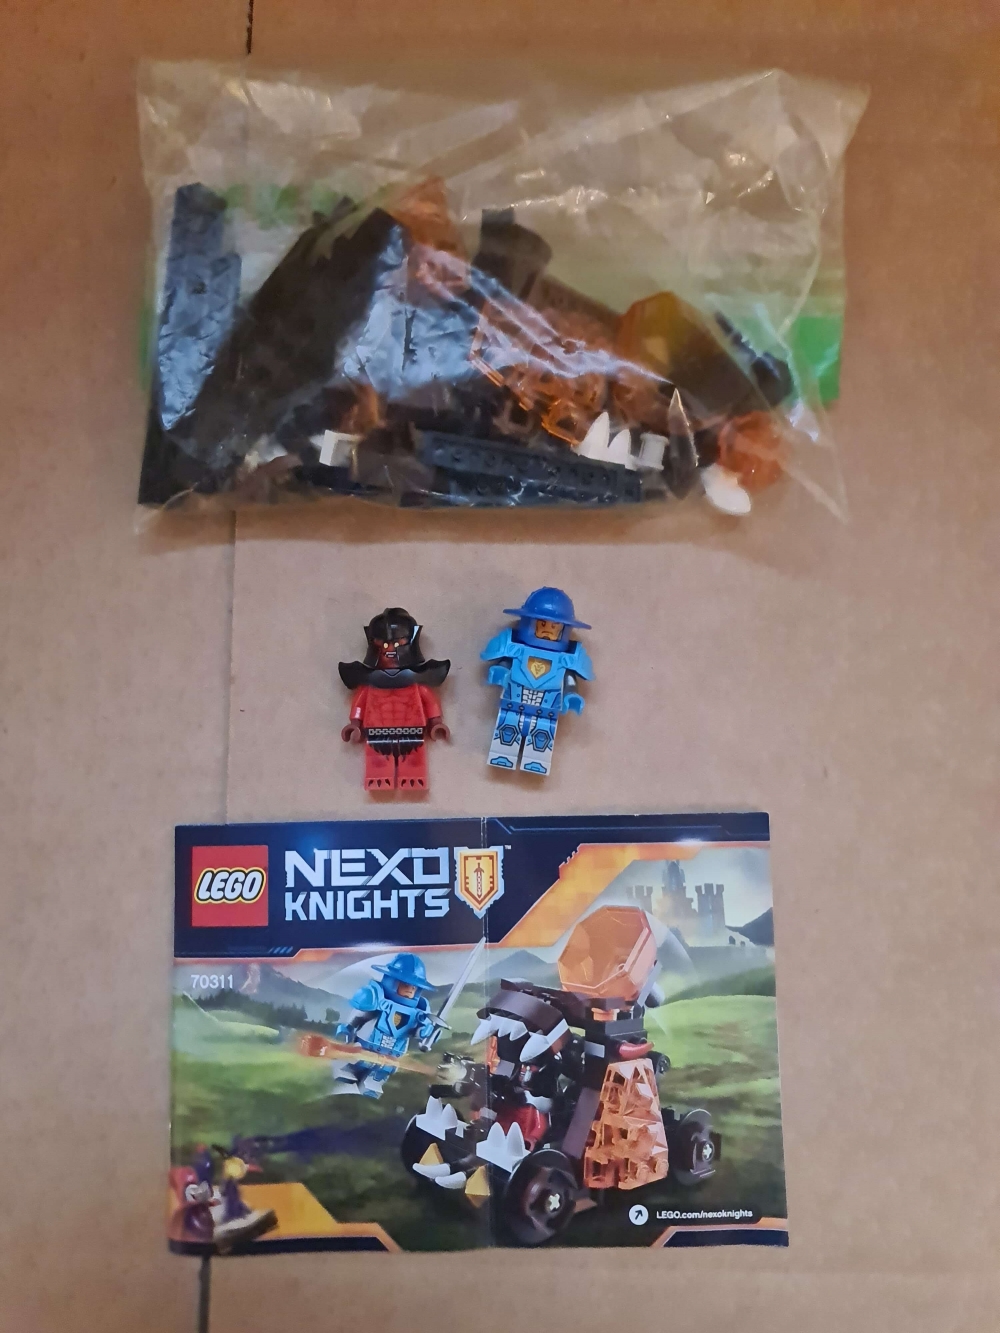 Sett 70311 fra Lego Nexo Knights serien. 

Meget pent. Komplett med manual. 